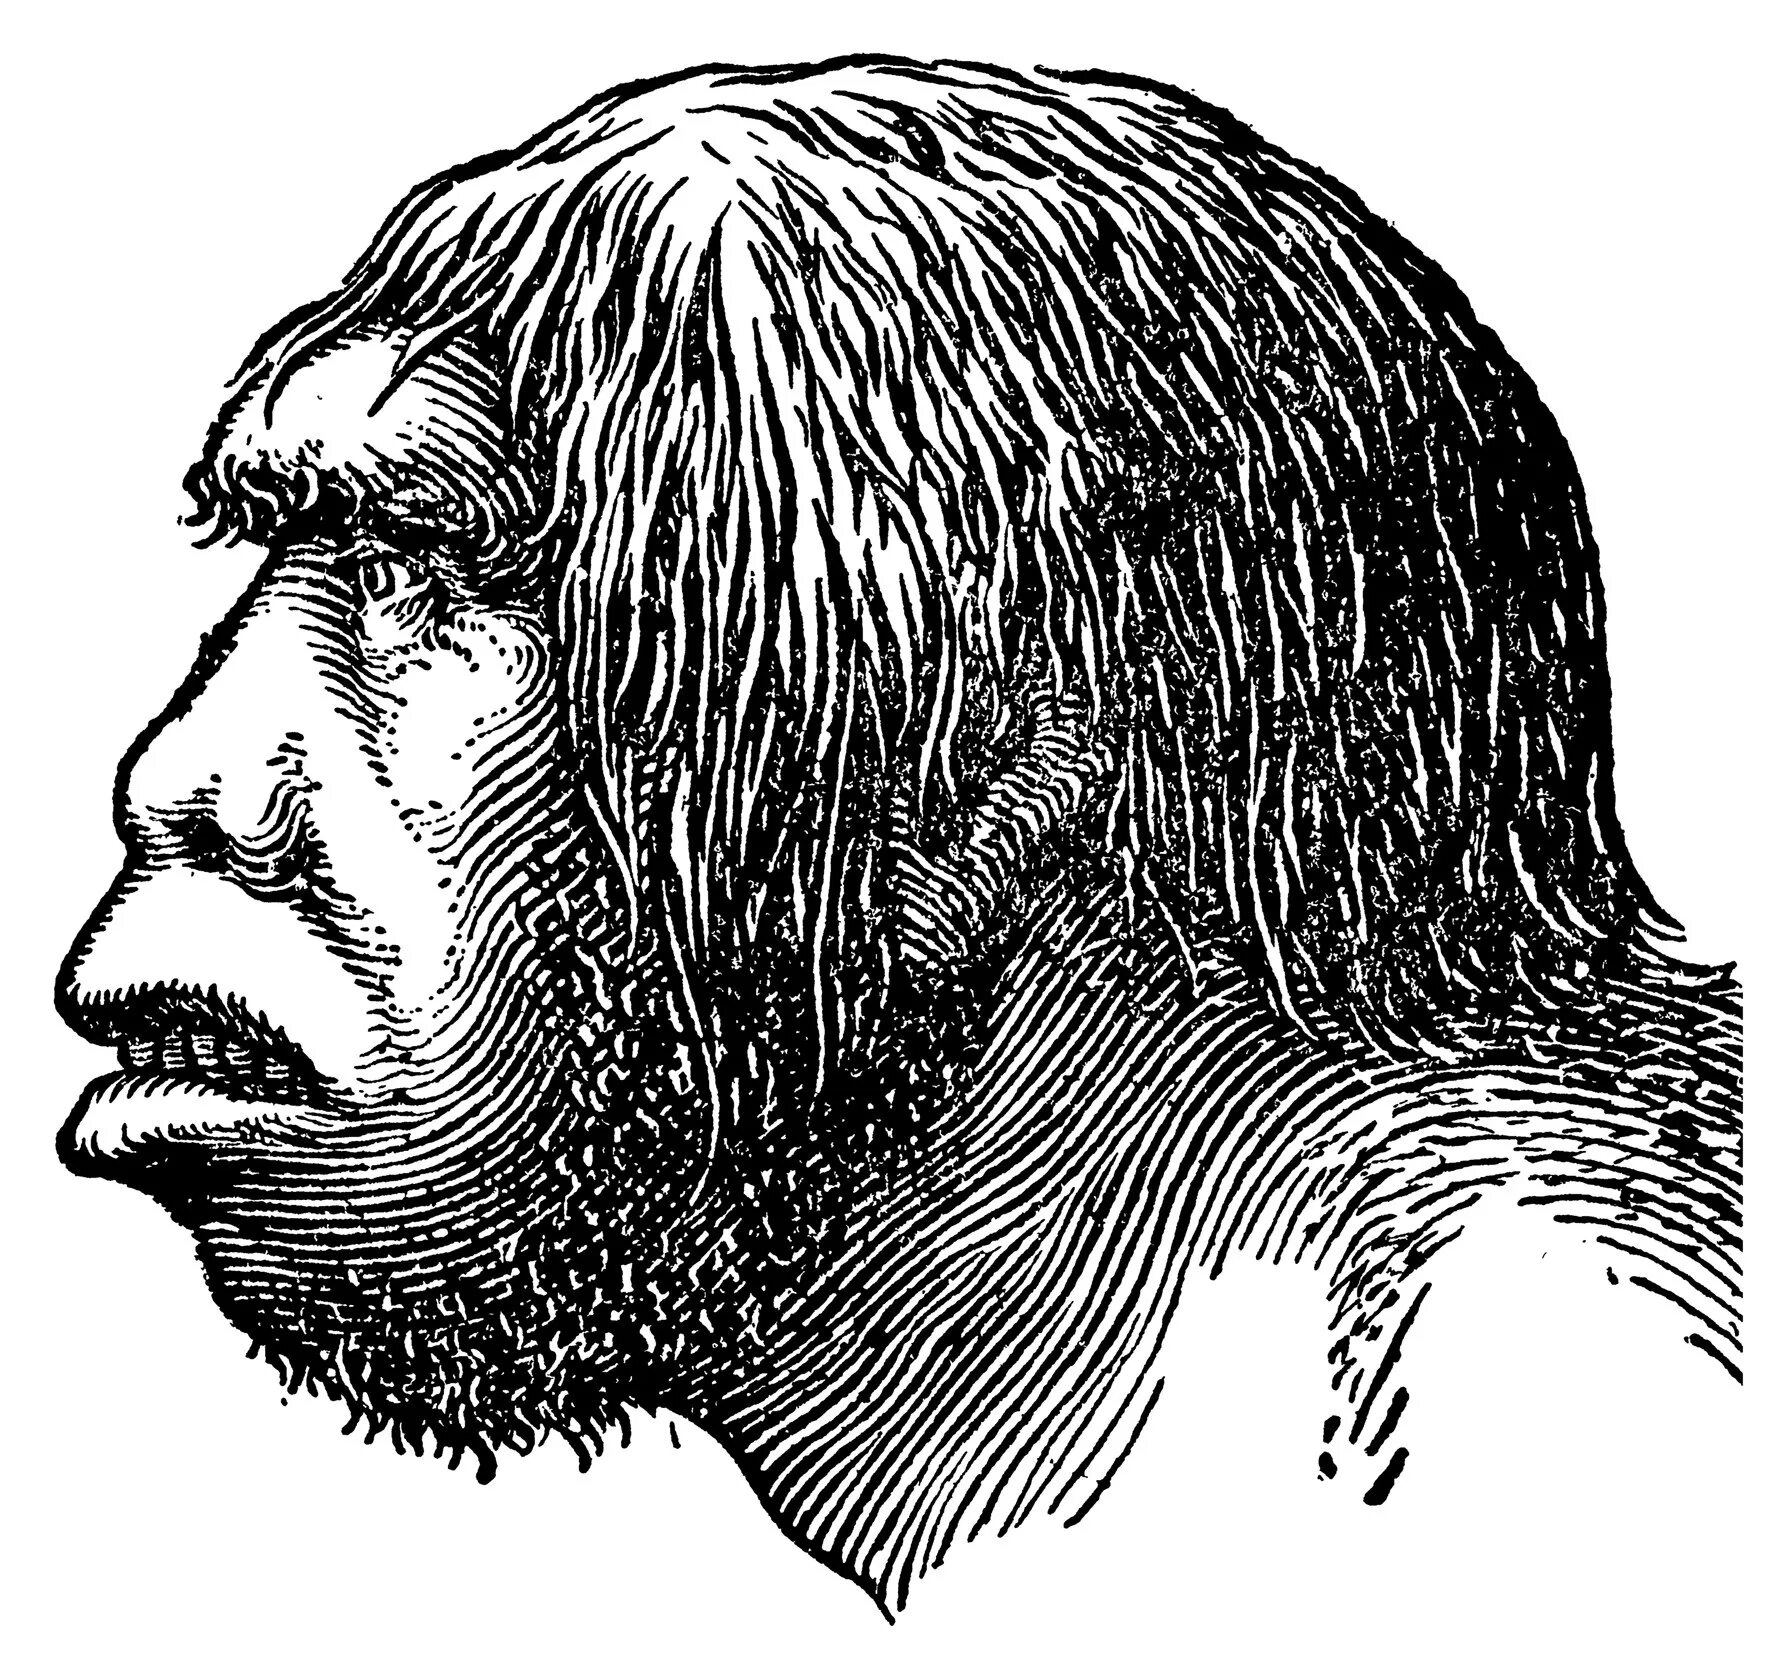 Неандерталец (homo Neanderthalensis) череп. Череп хомо сапиенс в профиль. Хомо сапиенс человек разумный. Хомо сапиенс питекантроп. Мозг древнего человека и современного